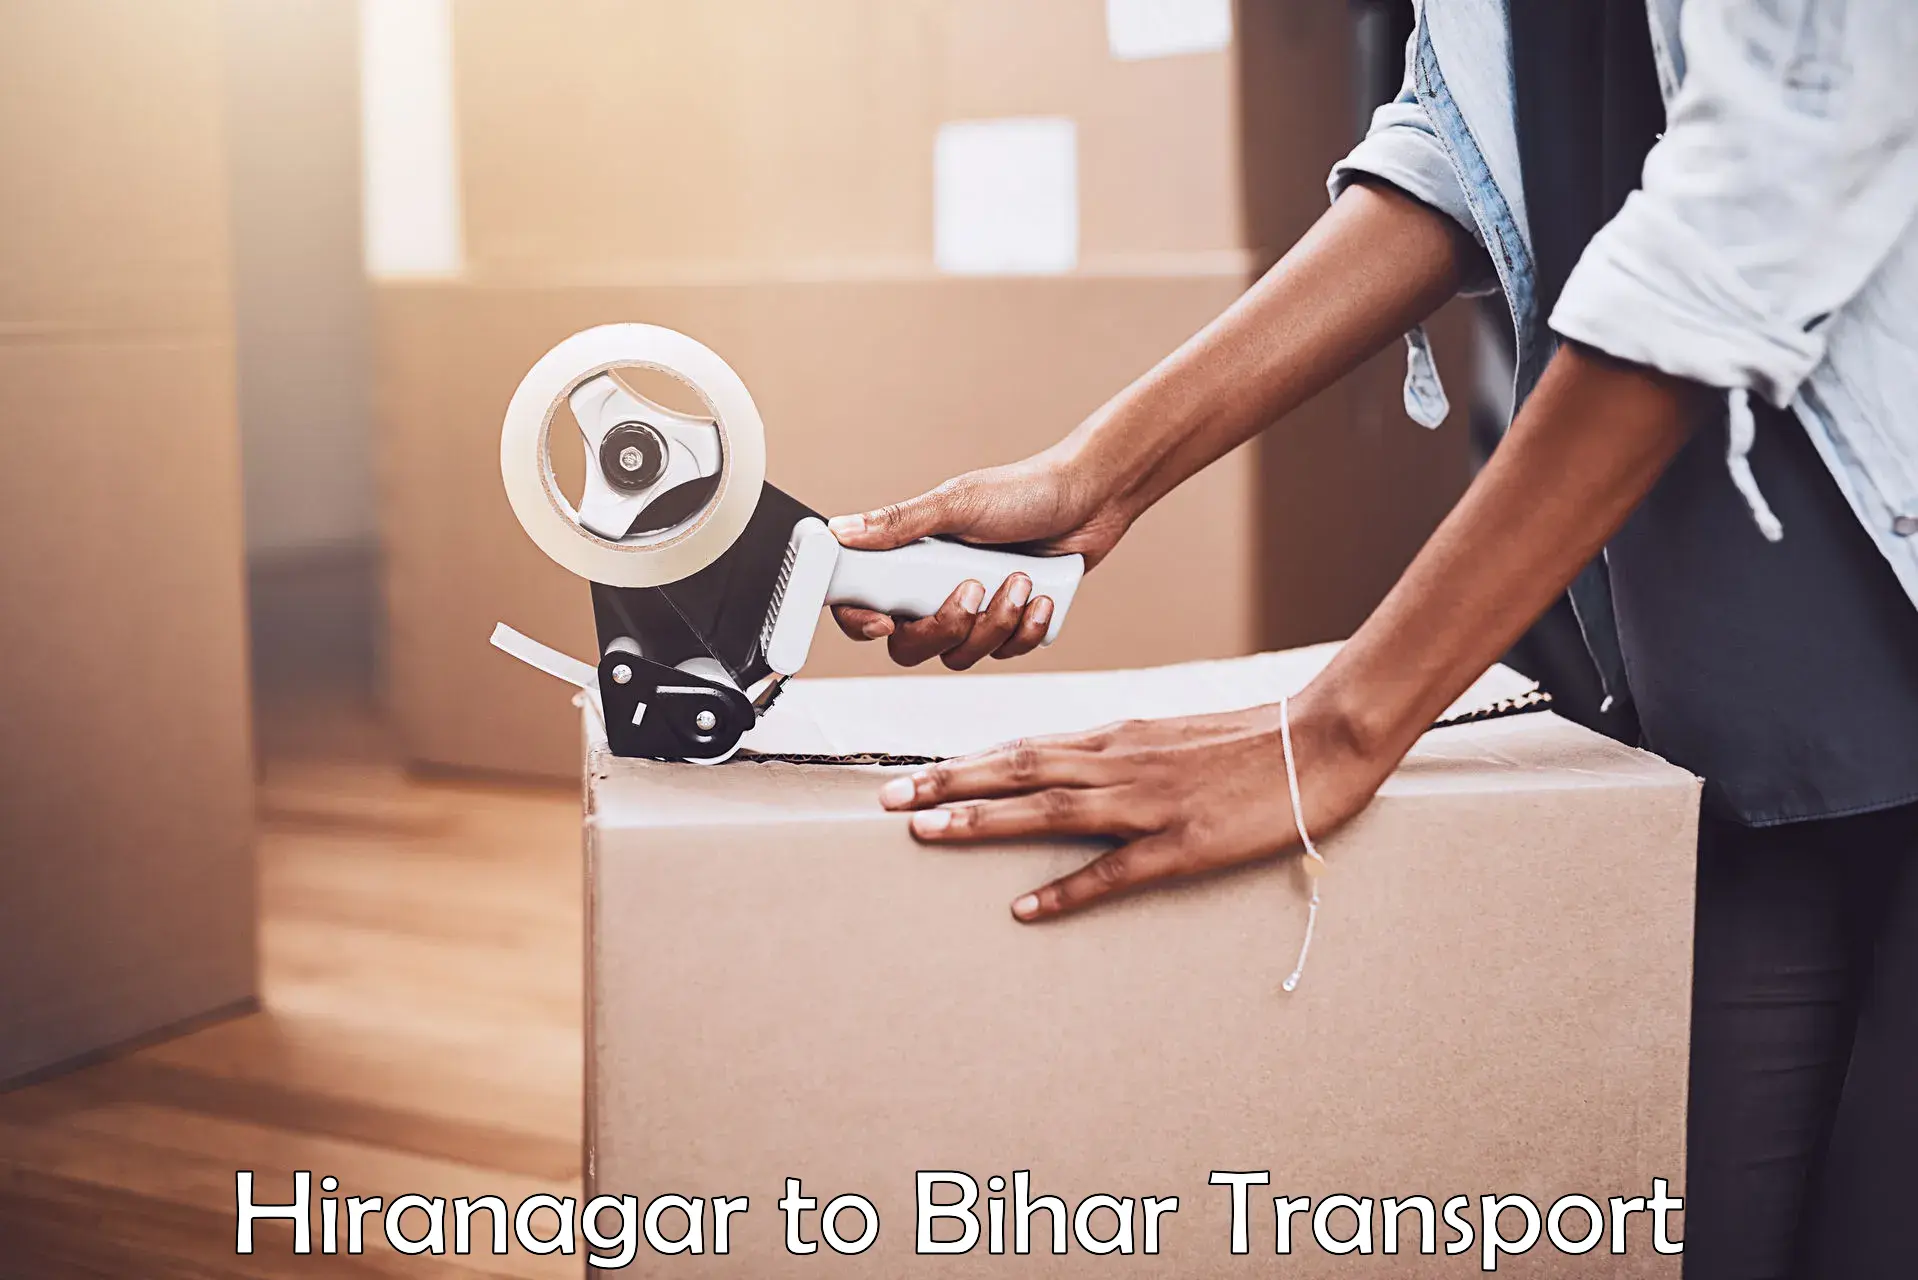 Online transport service Hiranagar to Bihta